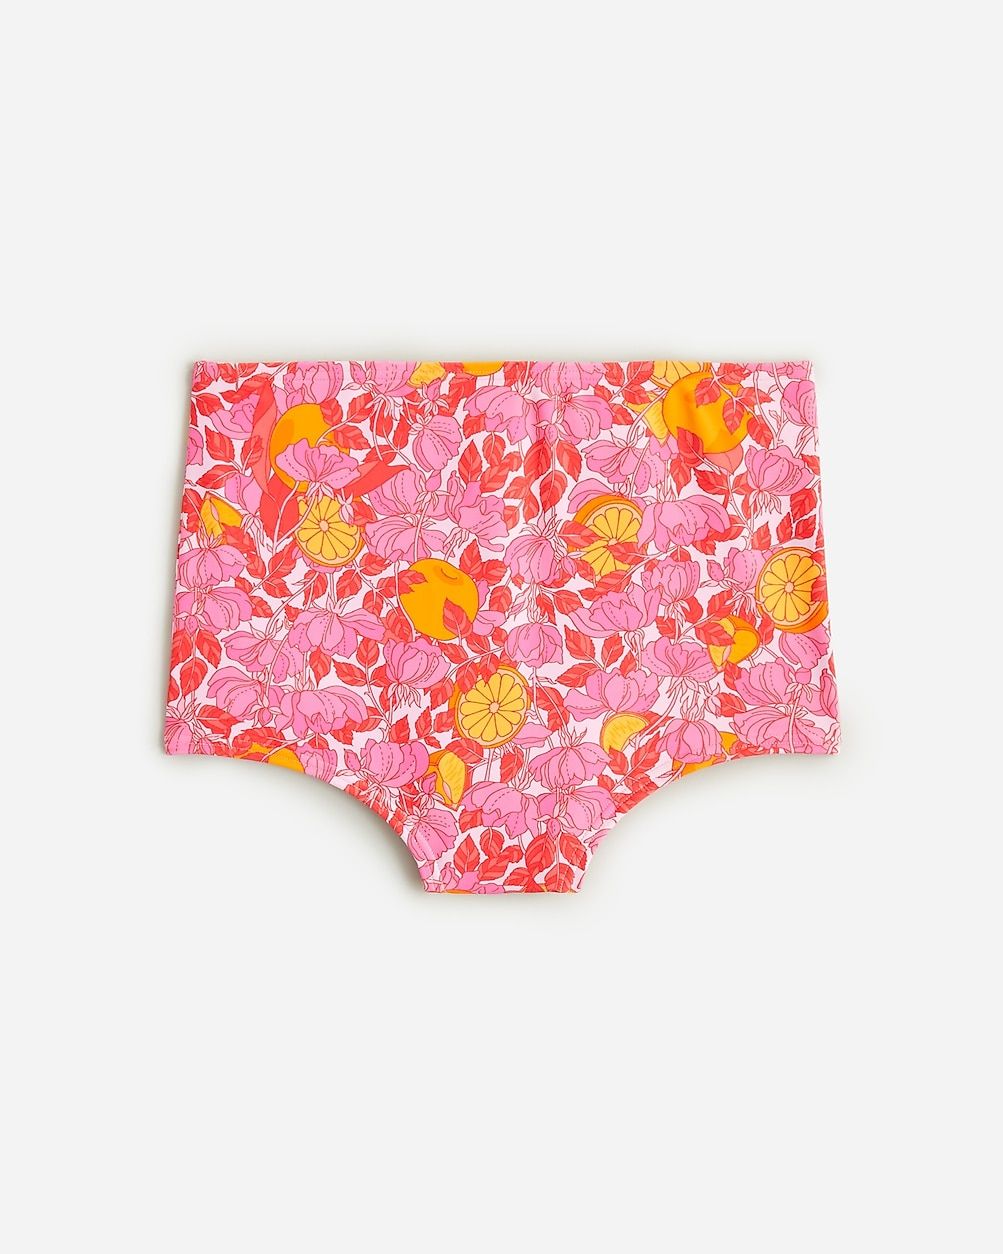 High-rise full-coverage bikini bottom in pink limone print | J.Crew US